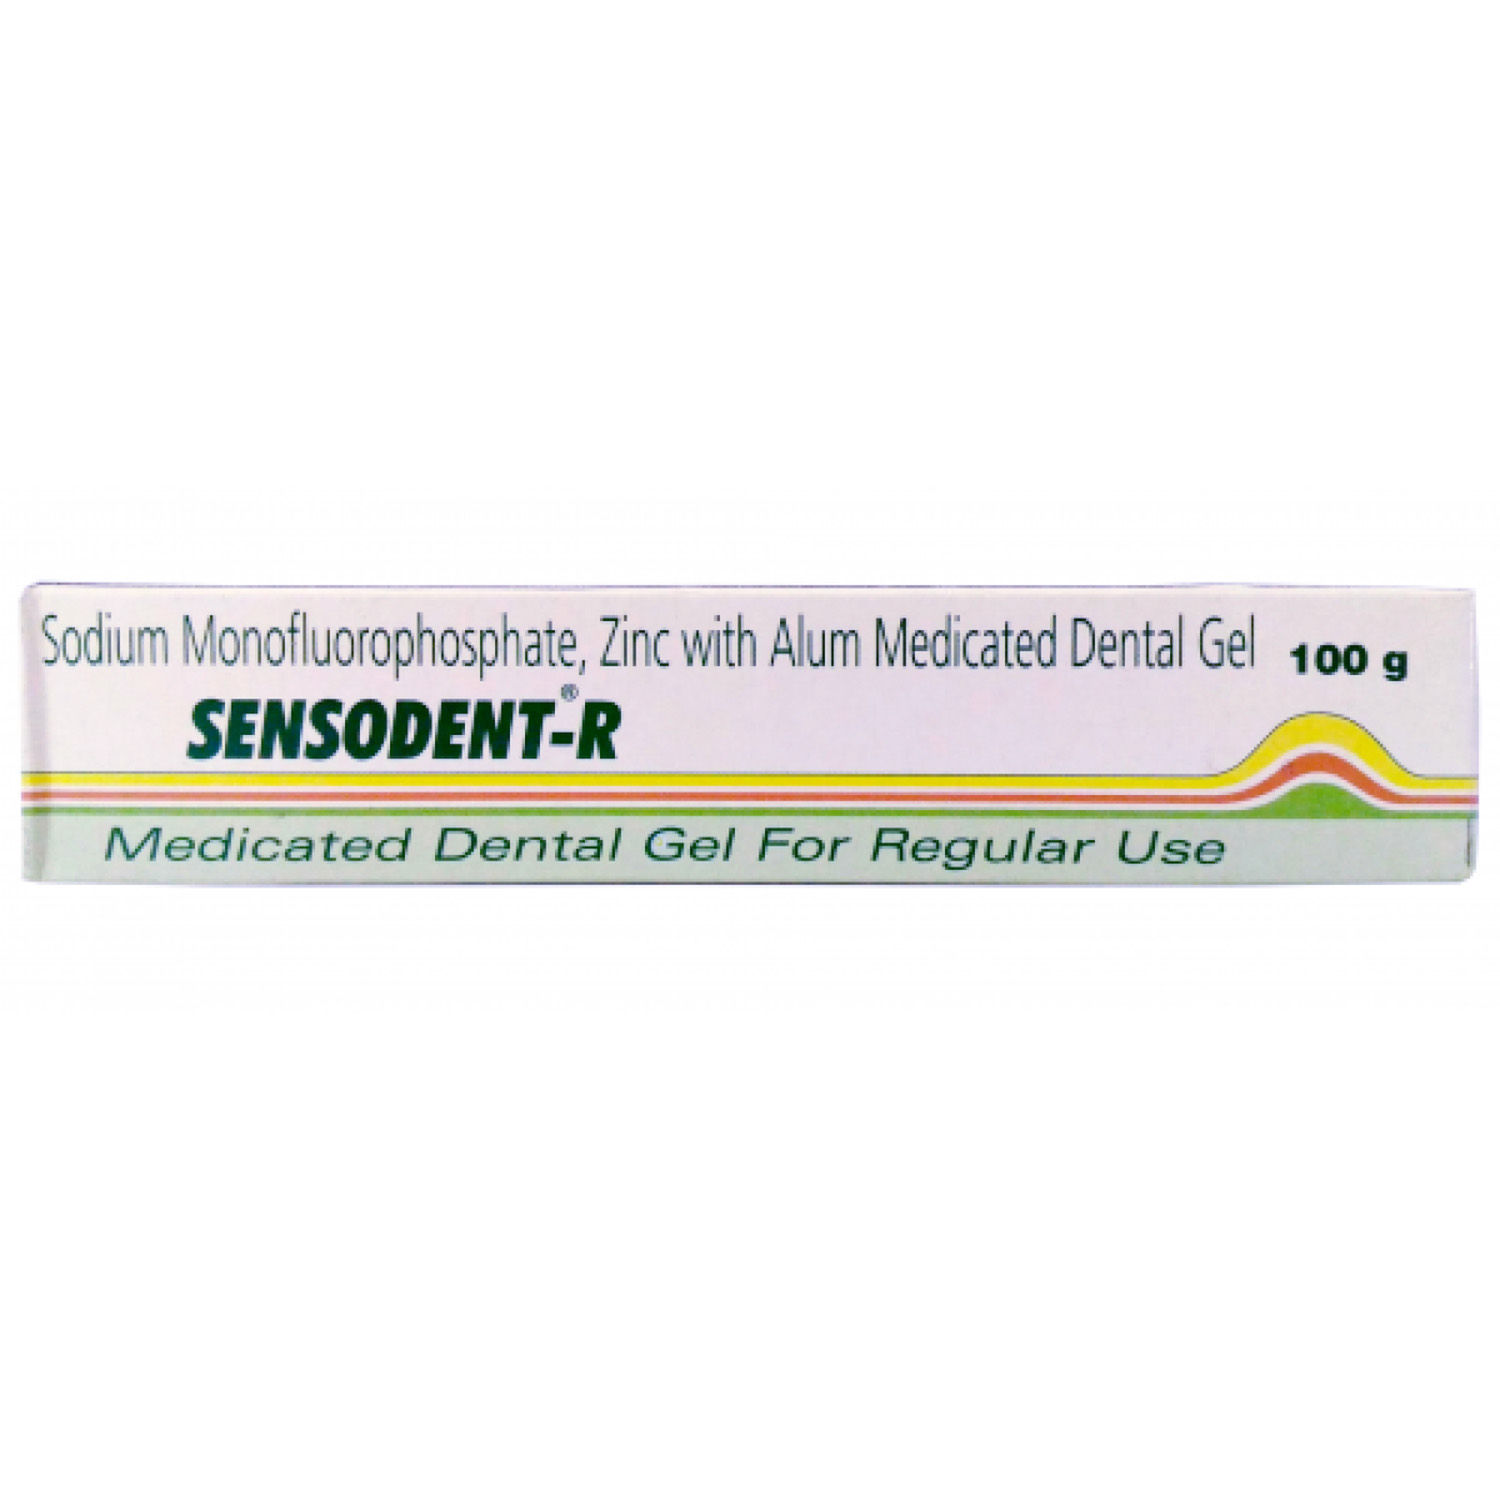 Buy Sensodent-R Medicated Oral Gel, 100 gm Online